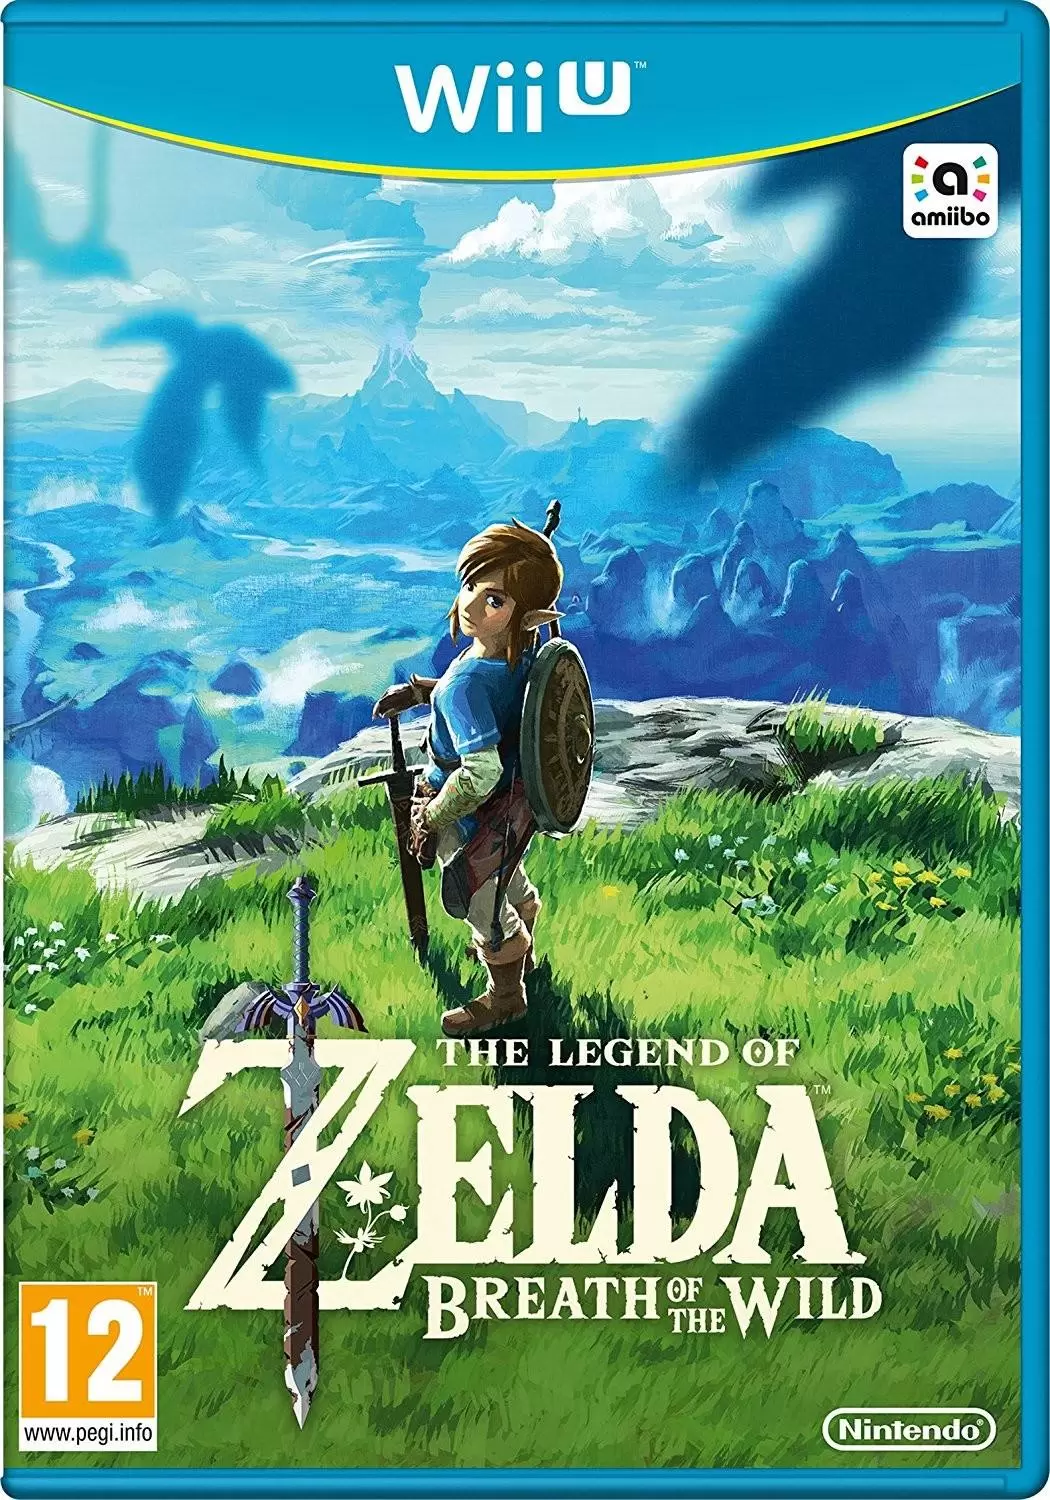 Wii U Games - The Legend of Zelda Breath of the Wild